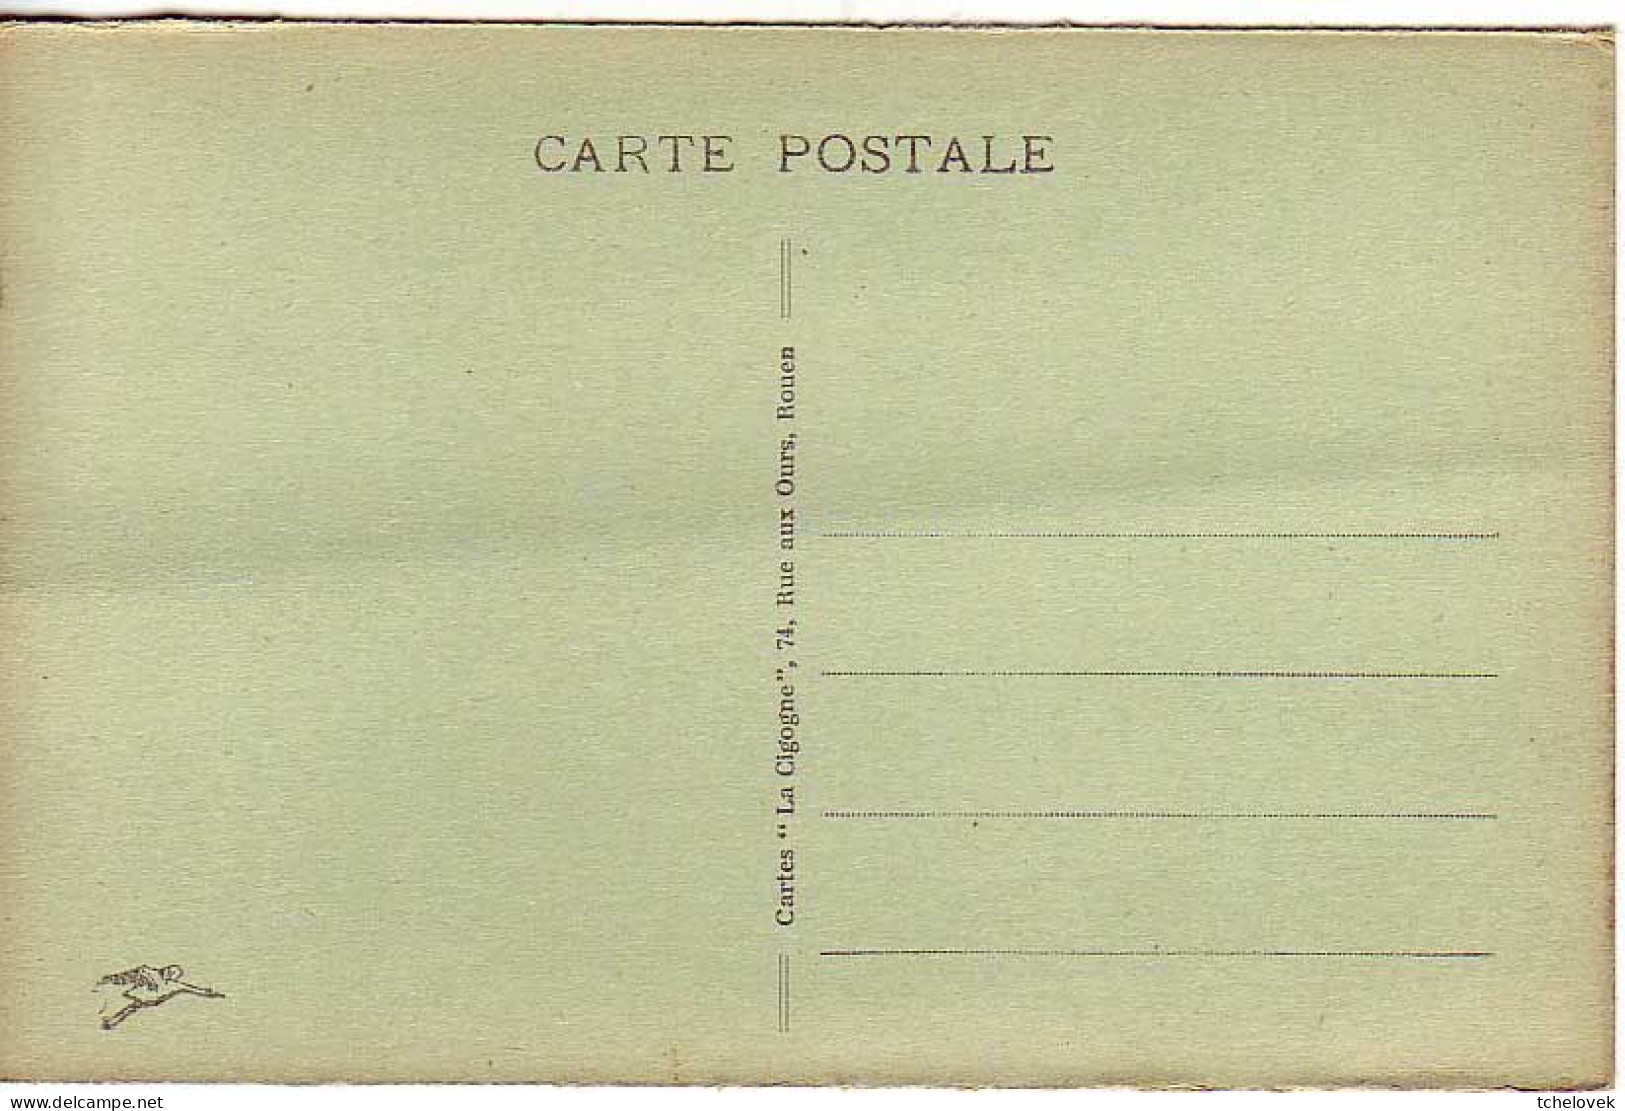 (76) SM. Rouen. Place De La Republique Ed CF N° 377, Ecrite Gare De Pont De L'Arche 1914 & Repro & 286 Palais Justice - Rouen